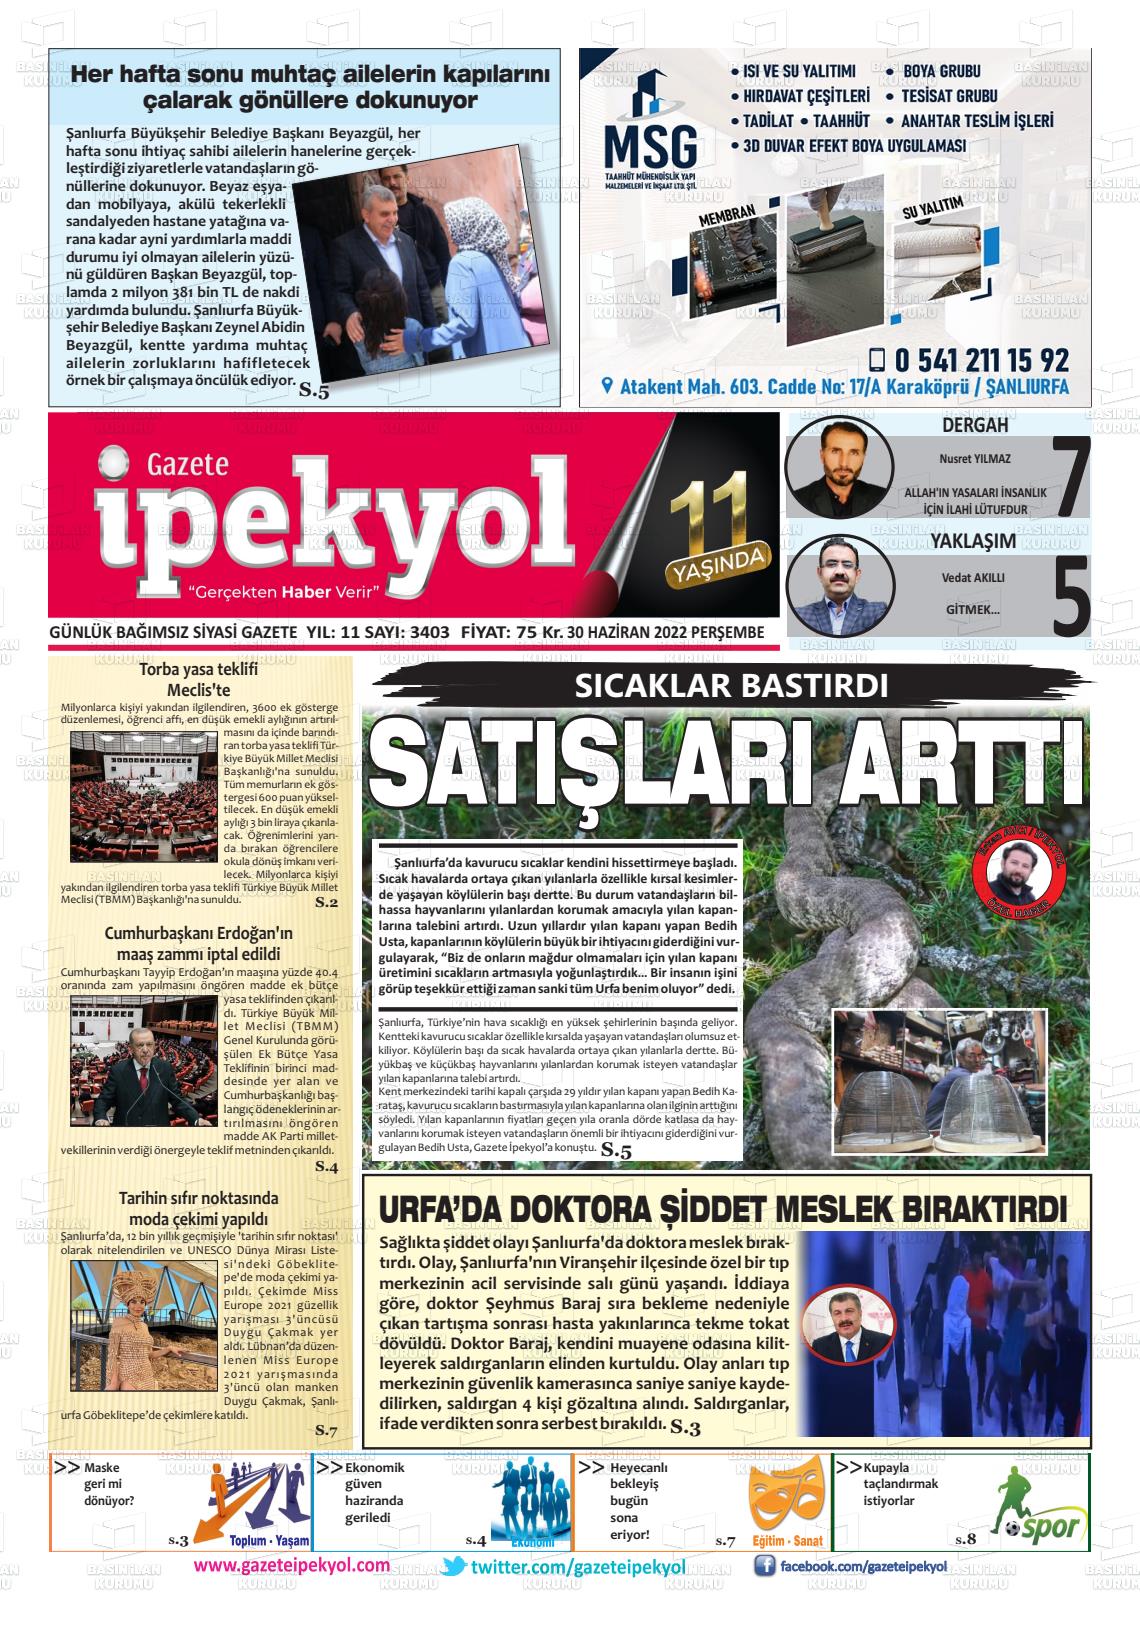 30 Haziran 2022 Gazete İpekyol Gazete Manşeti